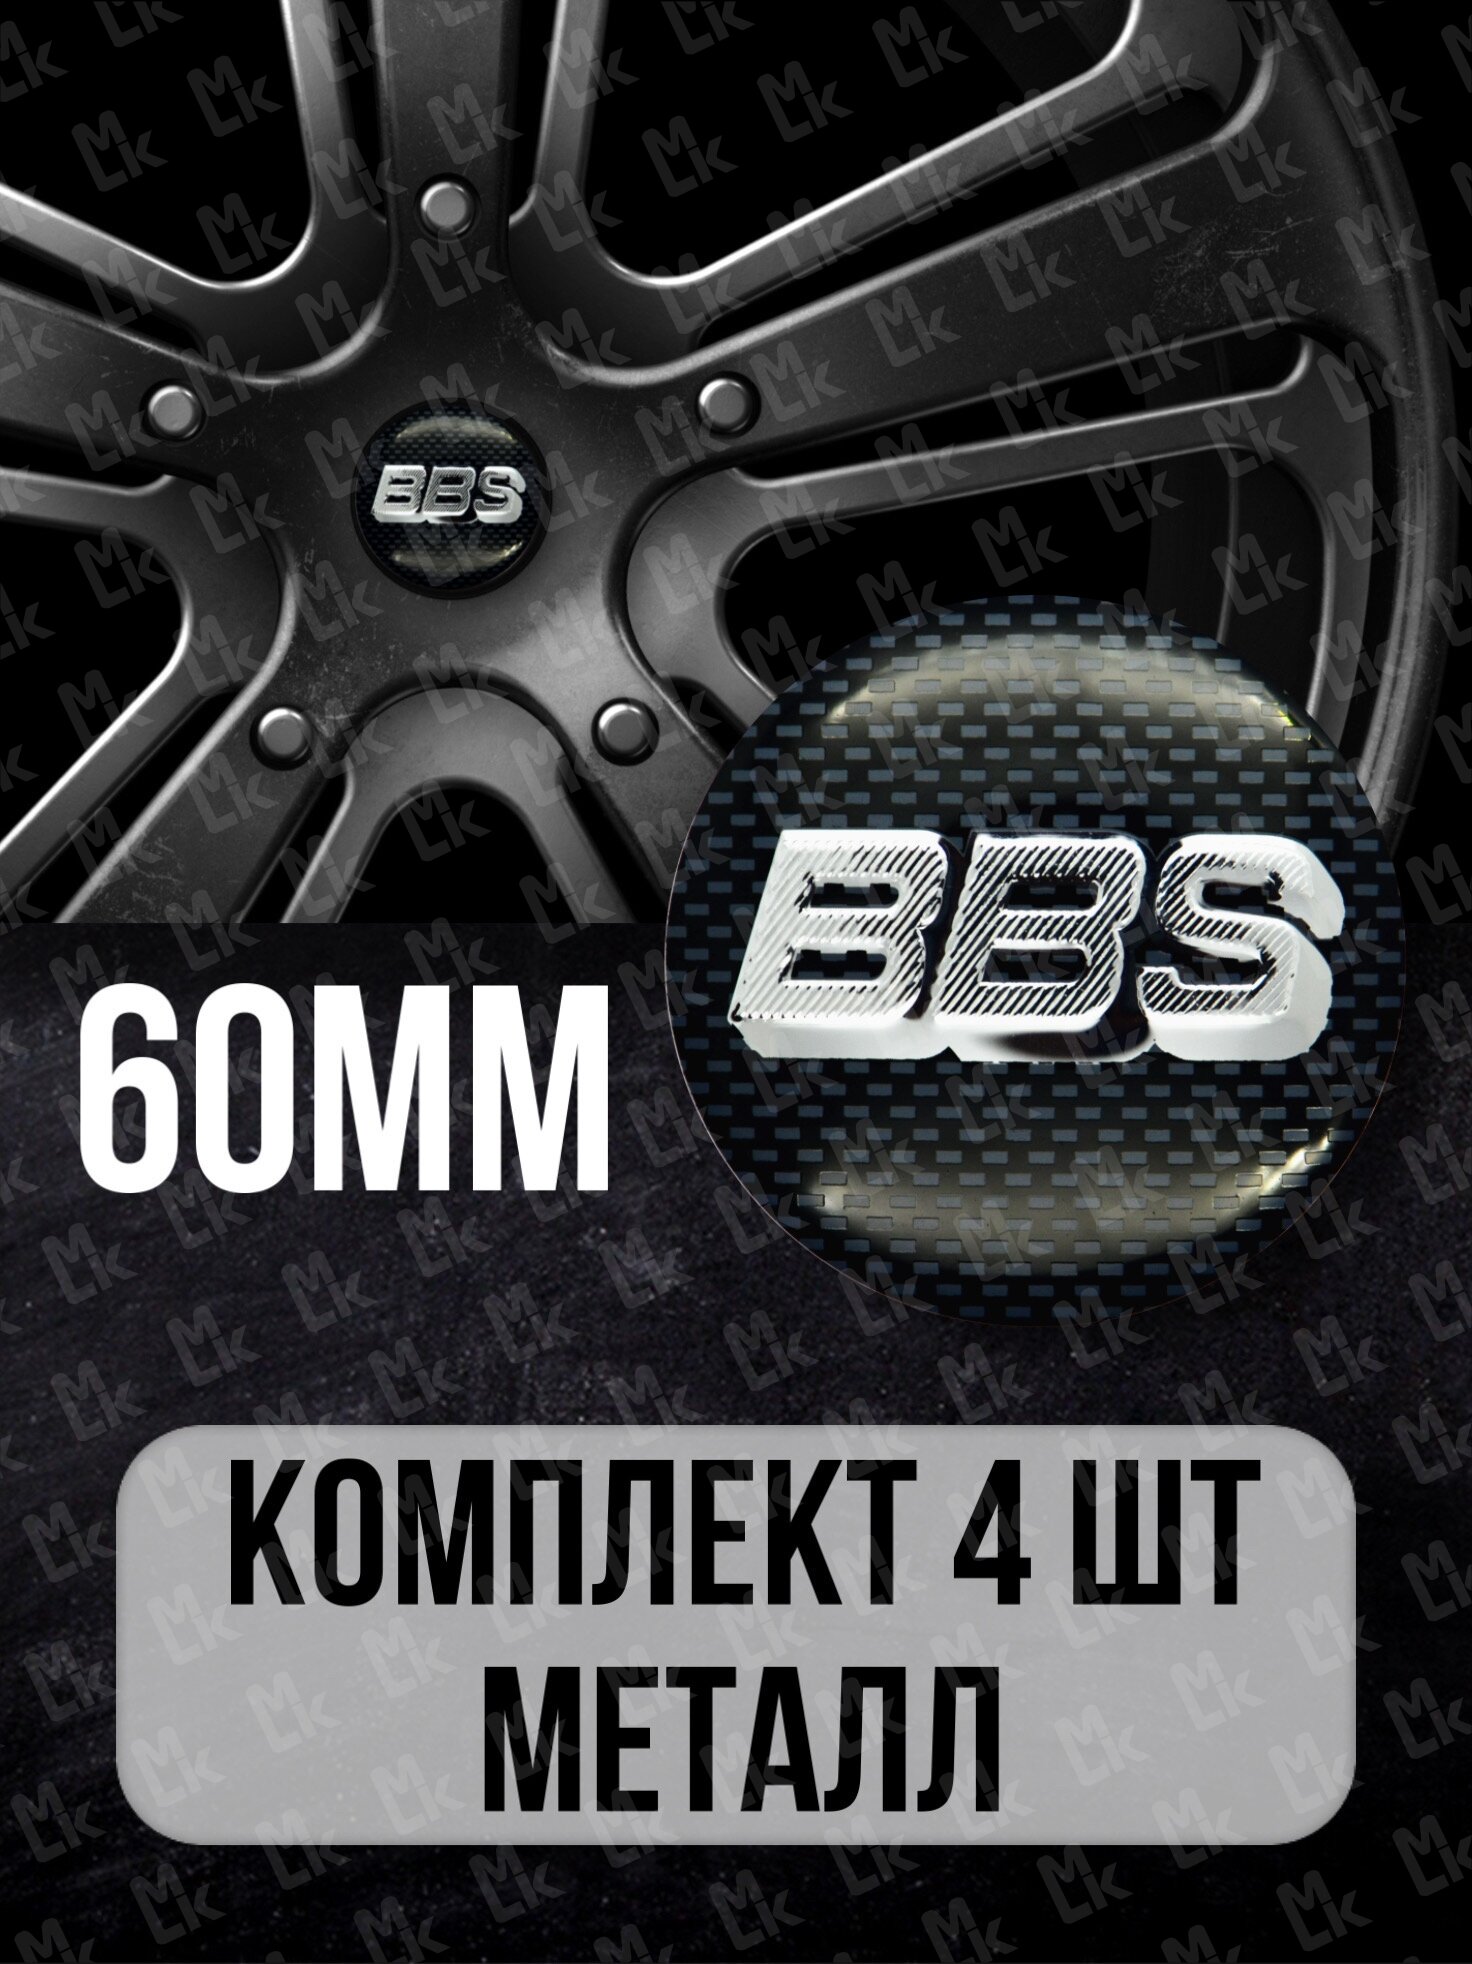 Наклейки на диски автомобильные Mashinokom с логотипом BBS D-60 mm